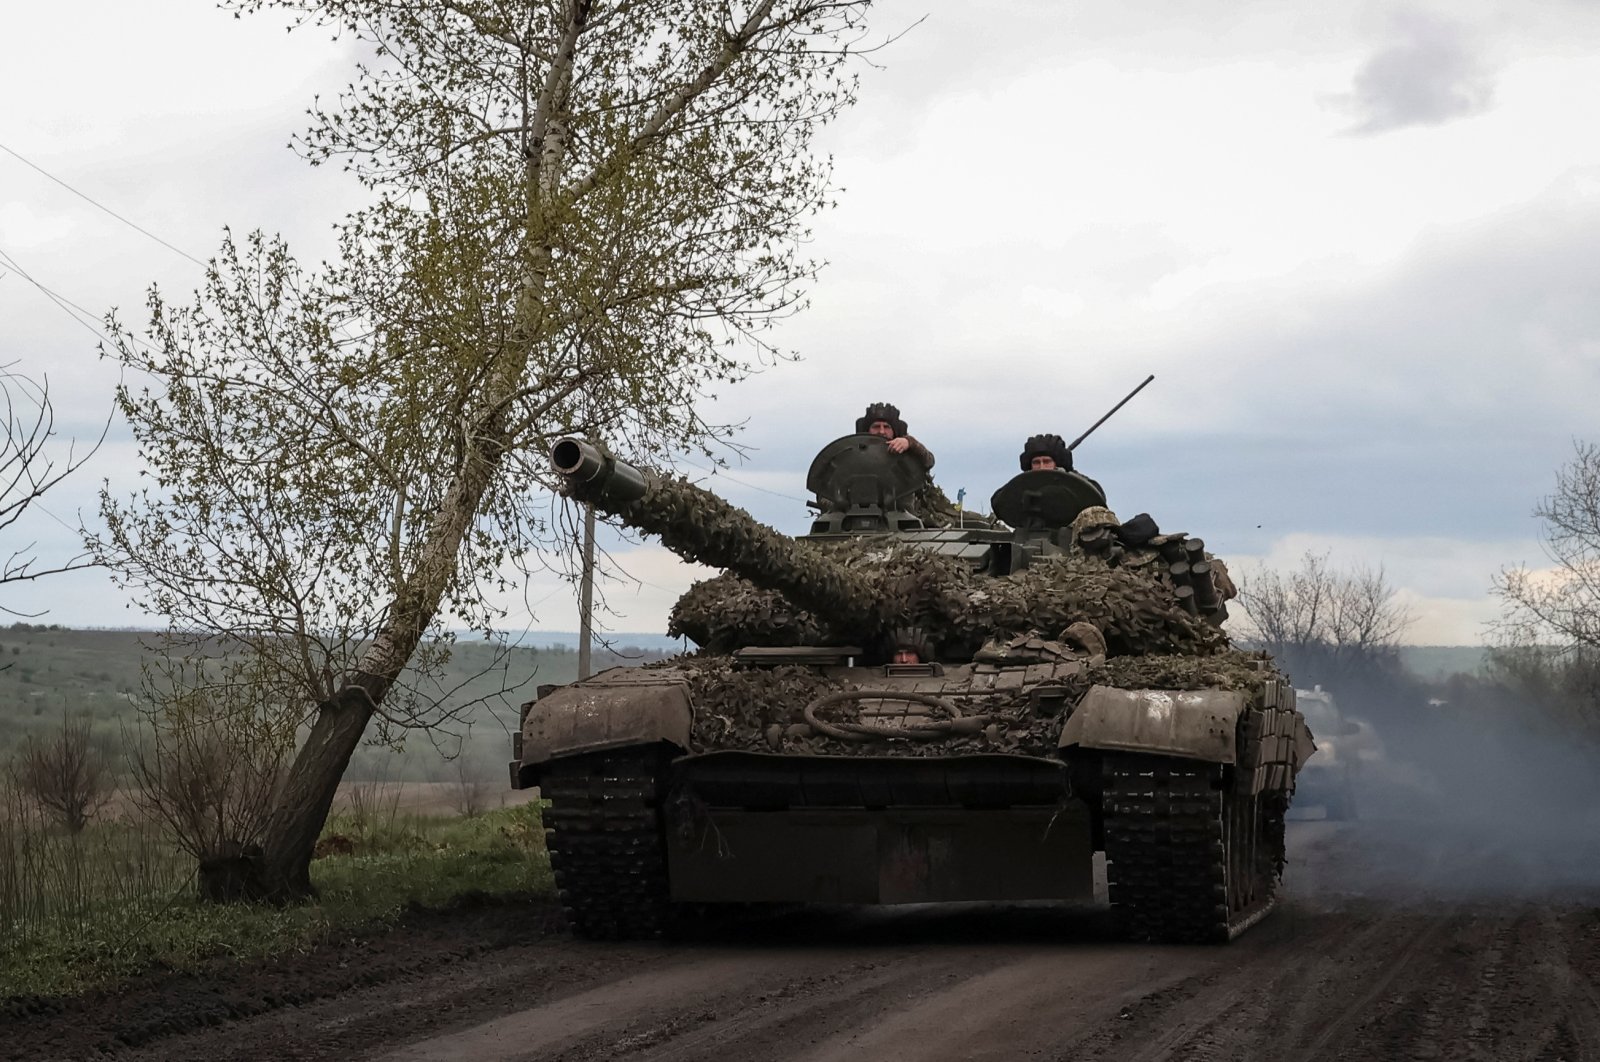 Ukraina sekarang memiliki kemampuan militer untuk merebut kembali wilayah: NATO